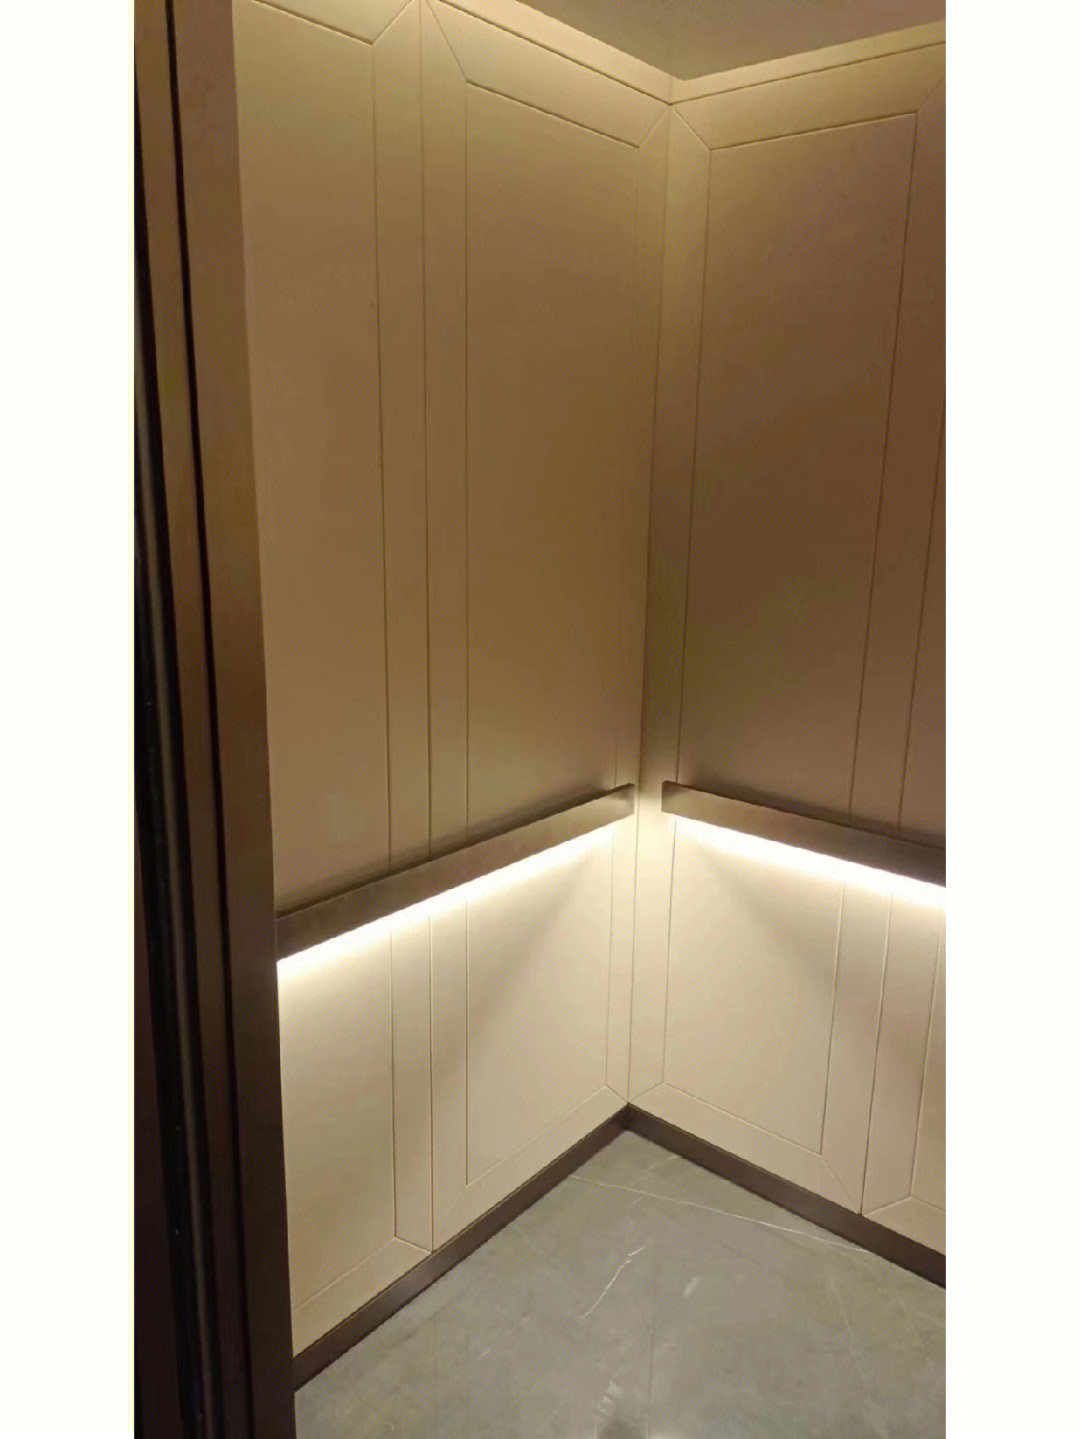 日立电梯轿厢装饰成品效果展示